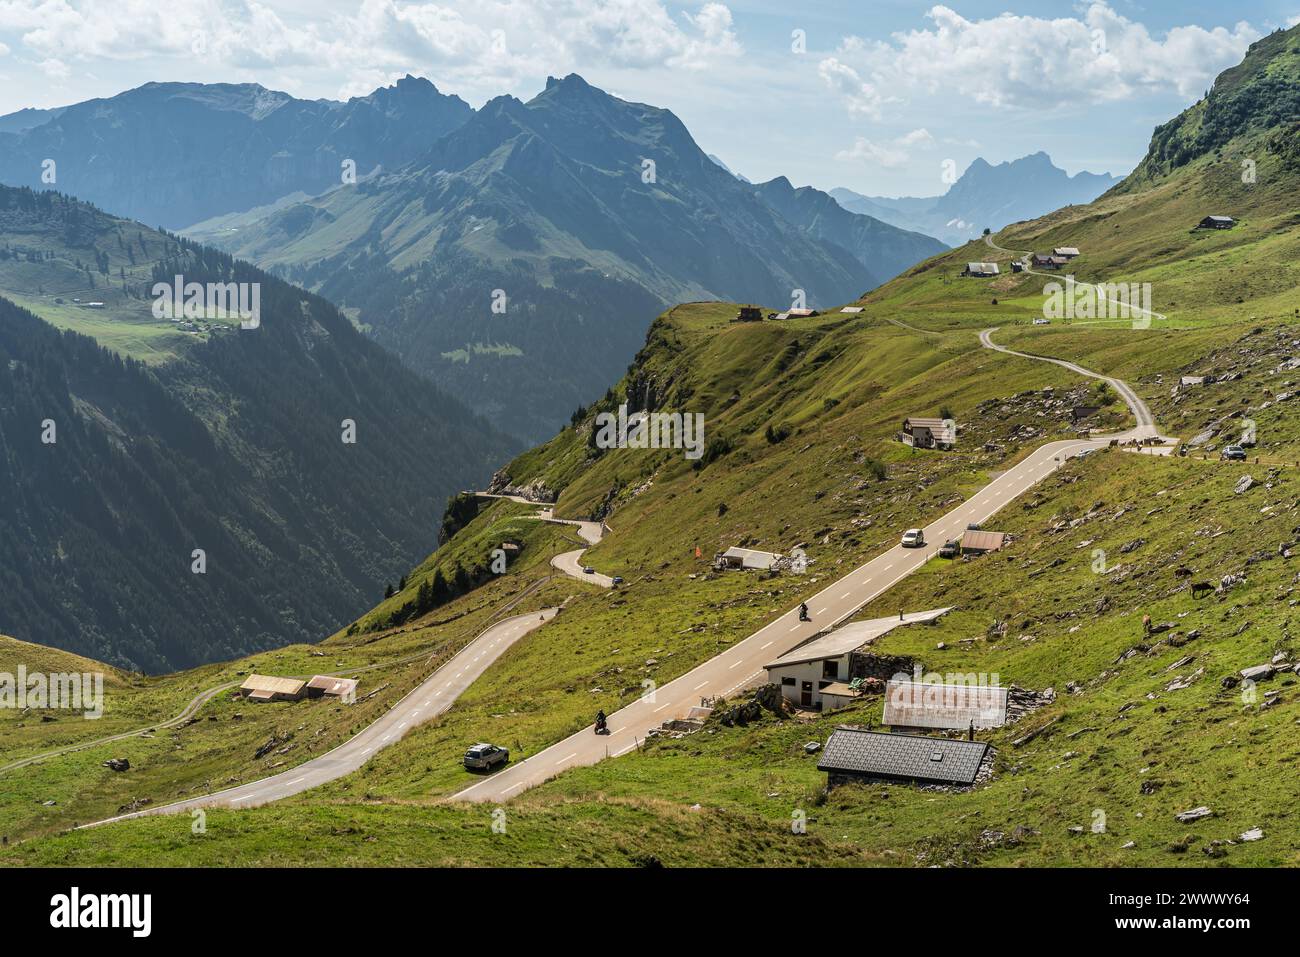 Paysage de montagne avec route de col et cabanes au col de Klausen, Unterschaechen, Canton d'Uri, Suisse Banque D'Images